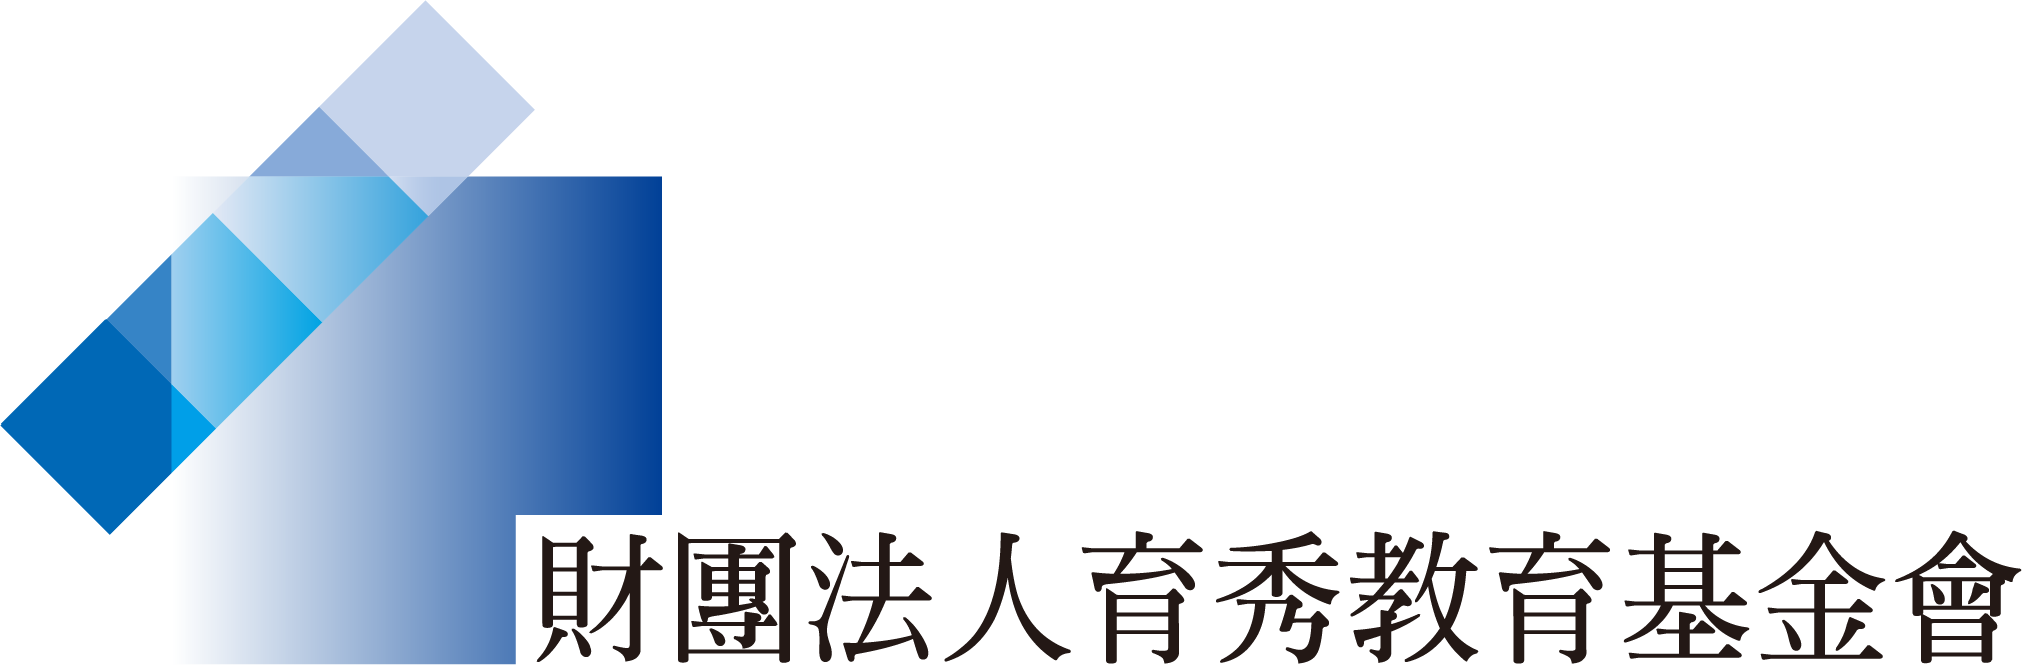 基金會logo 02